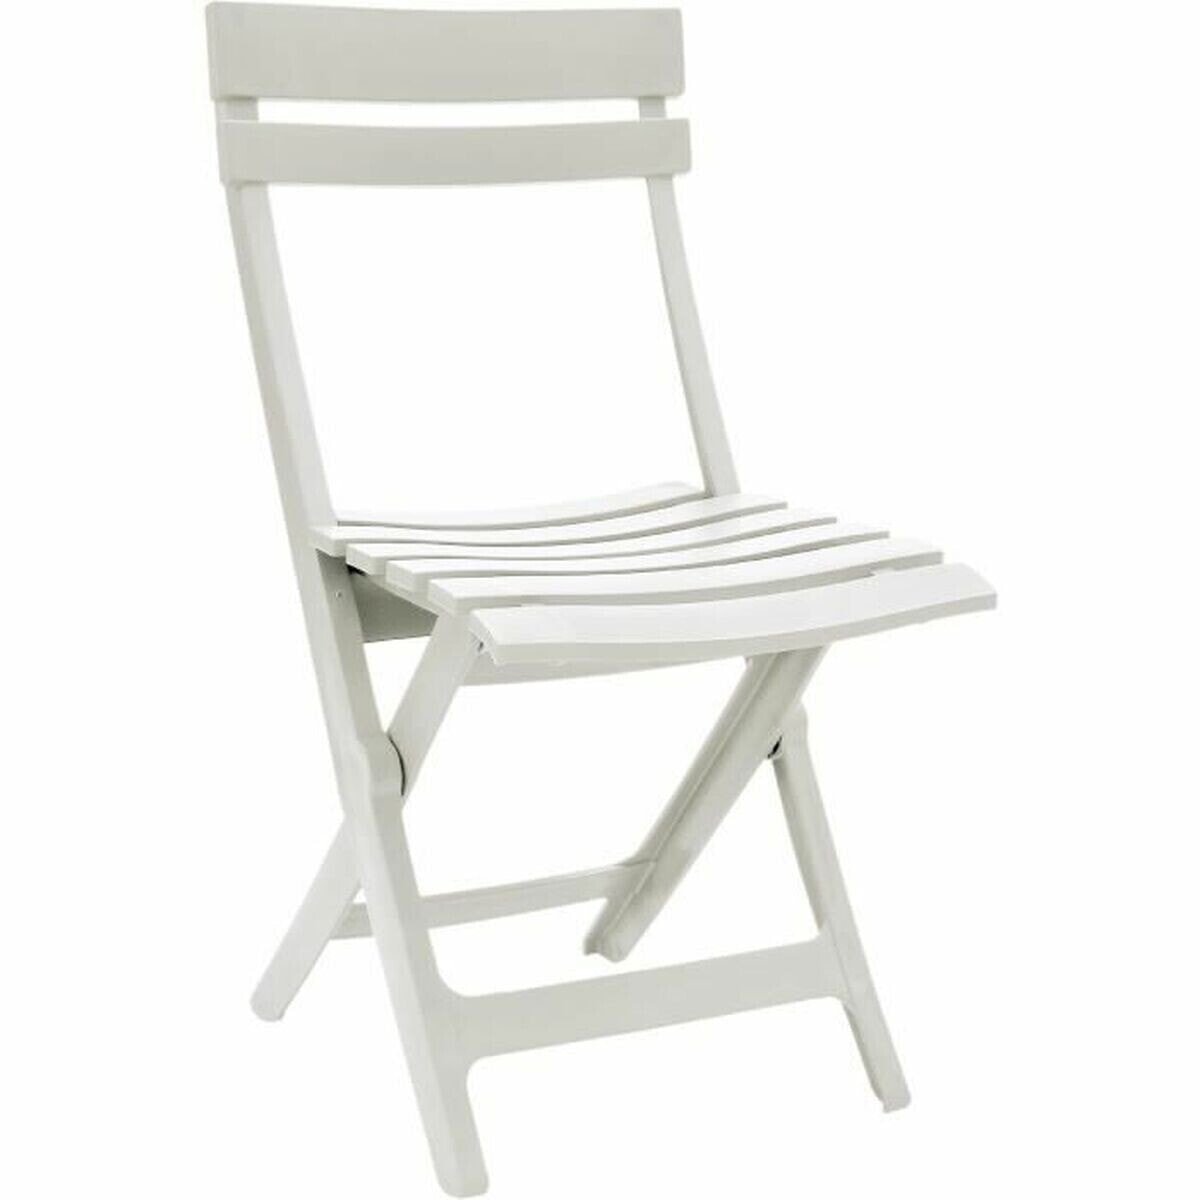 Garden chair White 42 x 50 x 80 cm